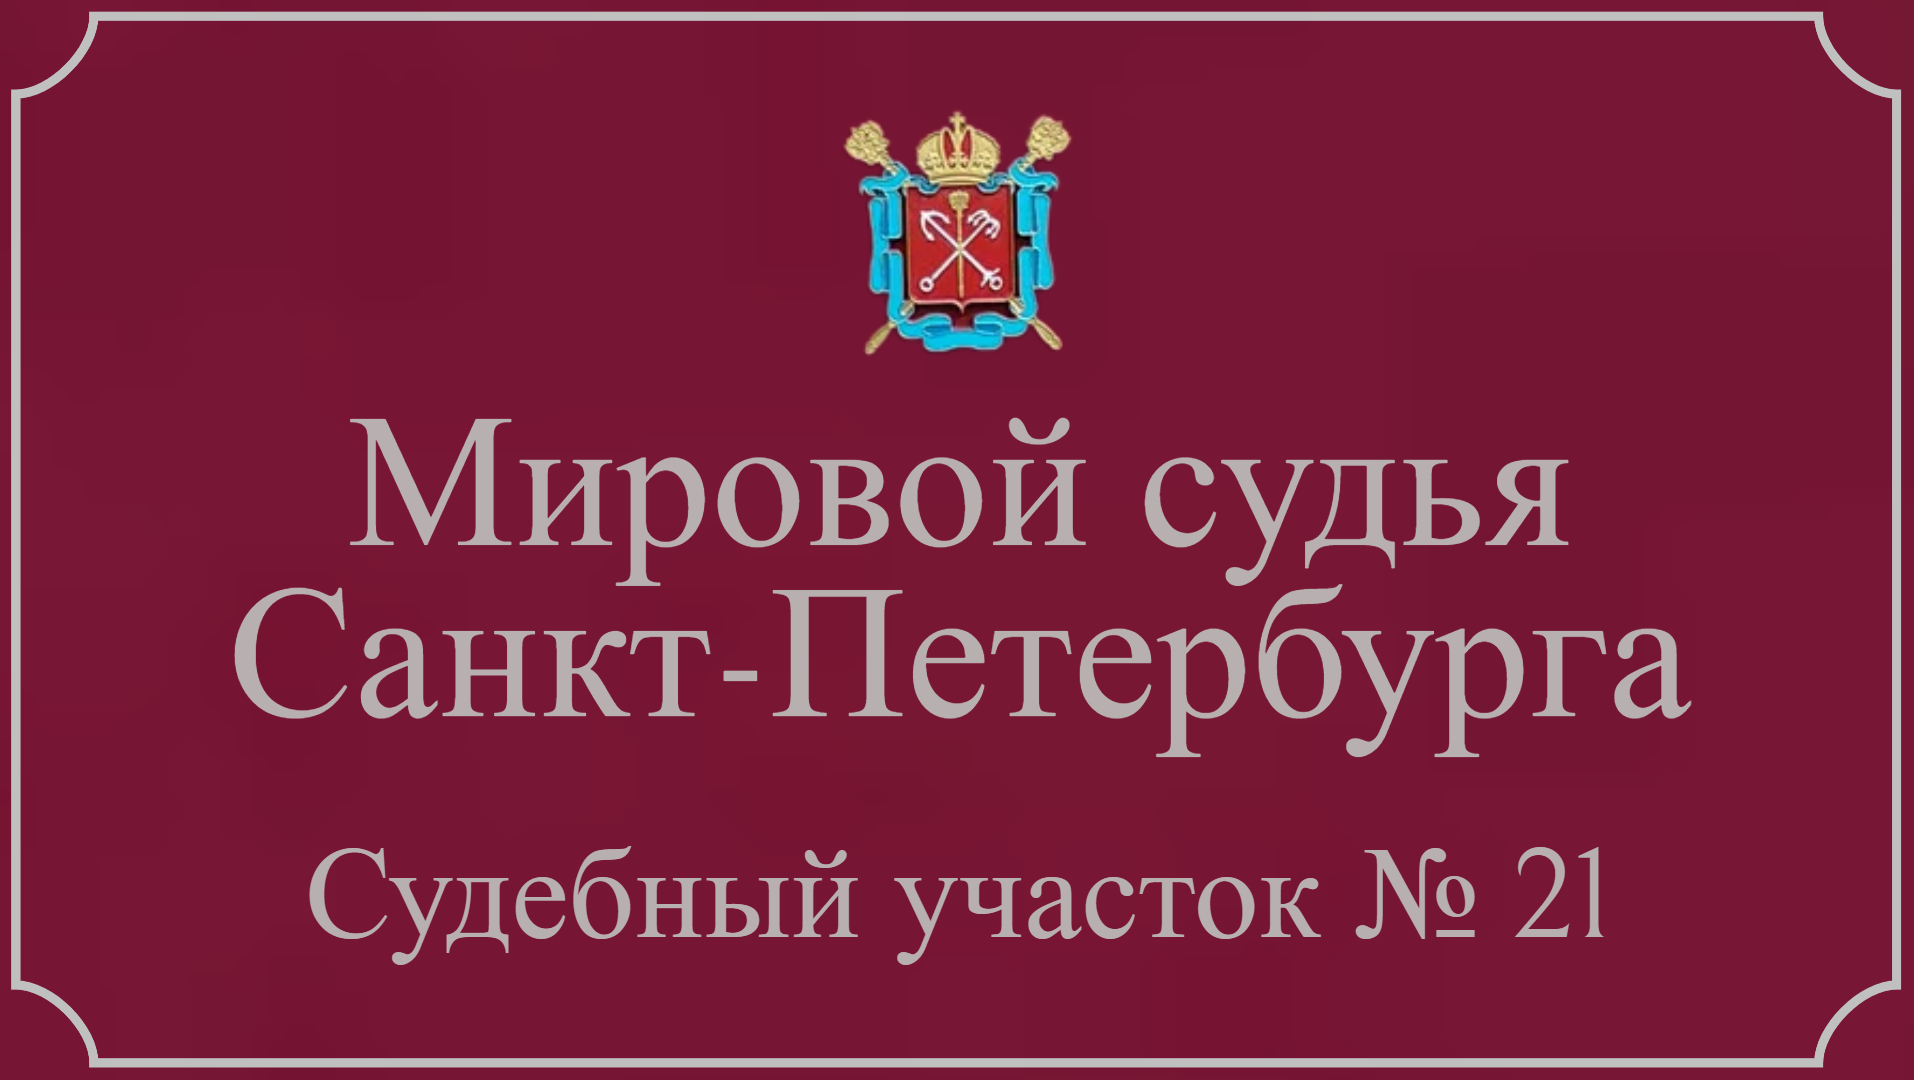 Информация по 21 судебному участку в Санкт-Петербурге.